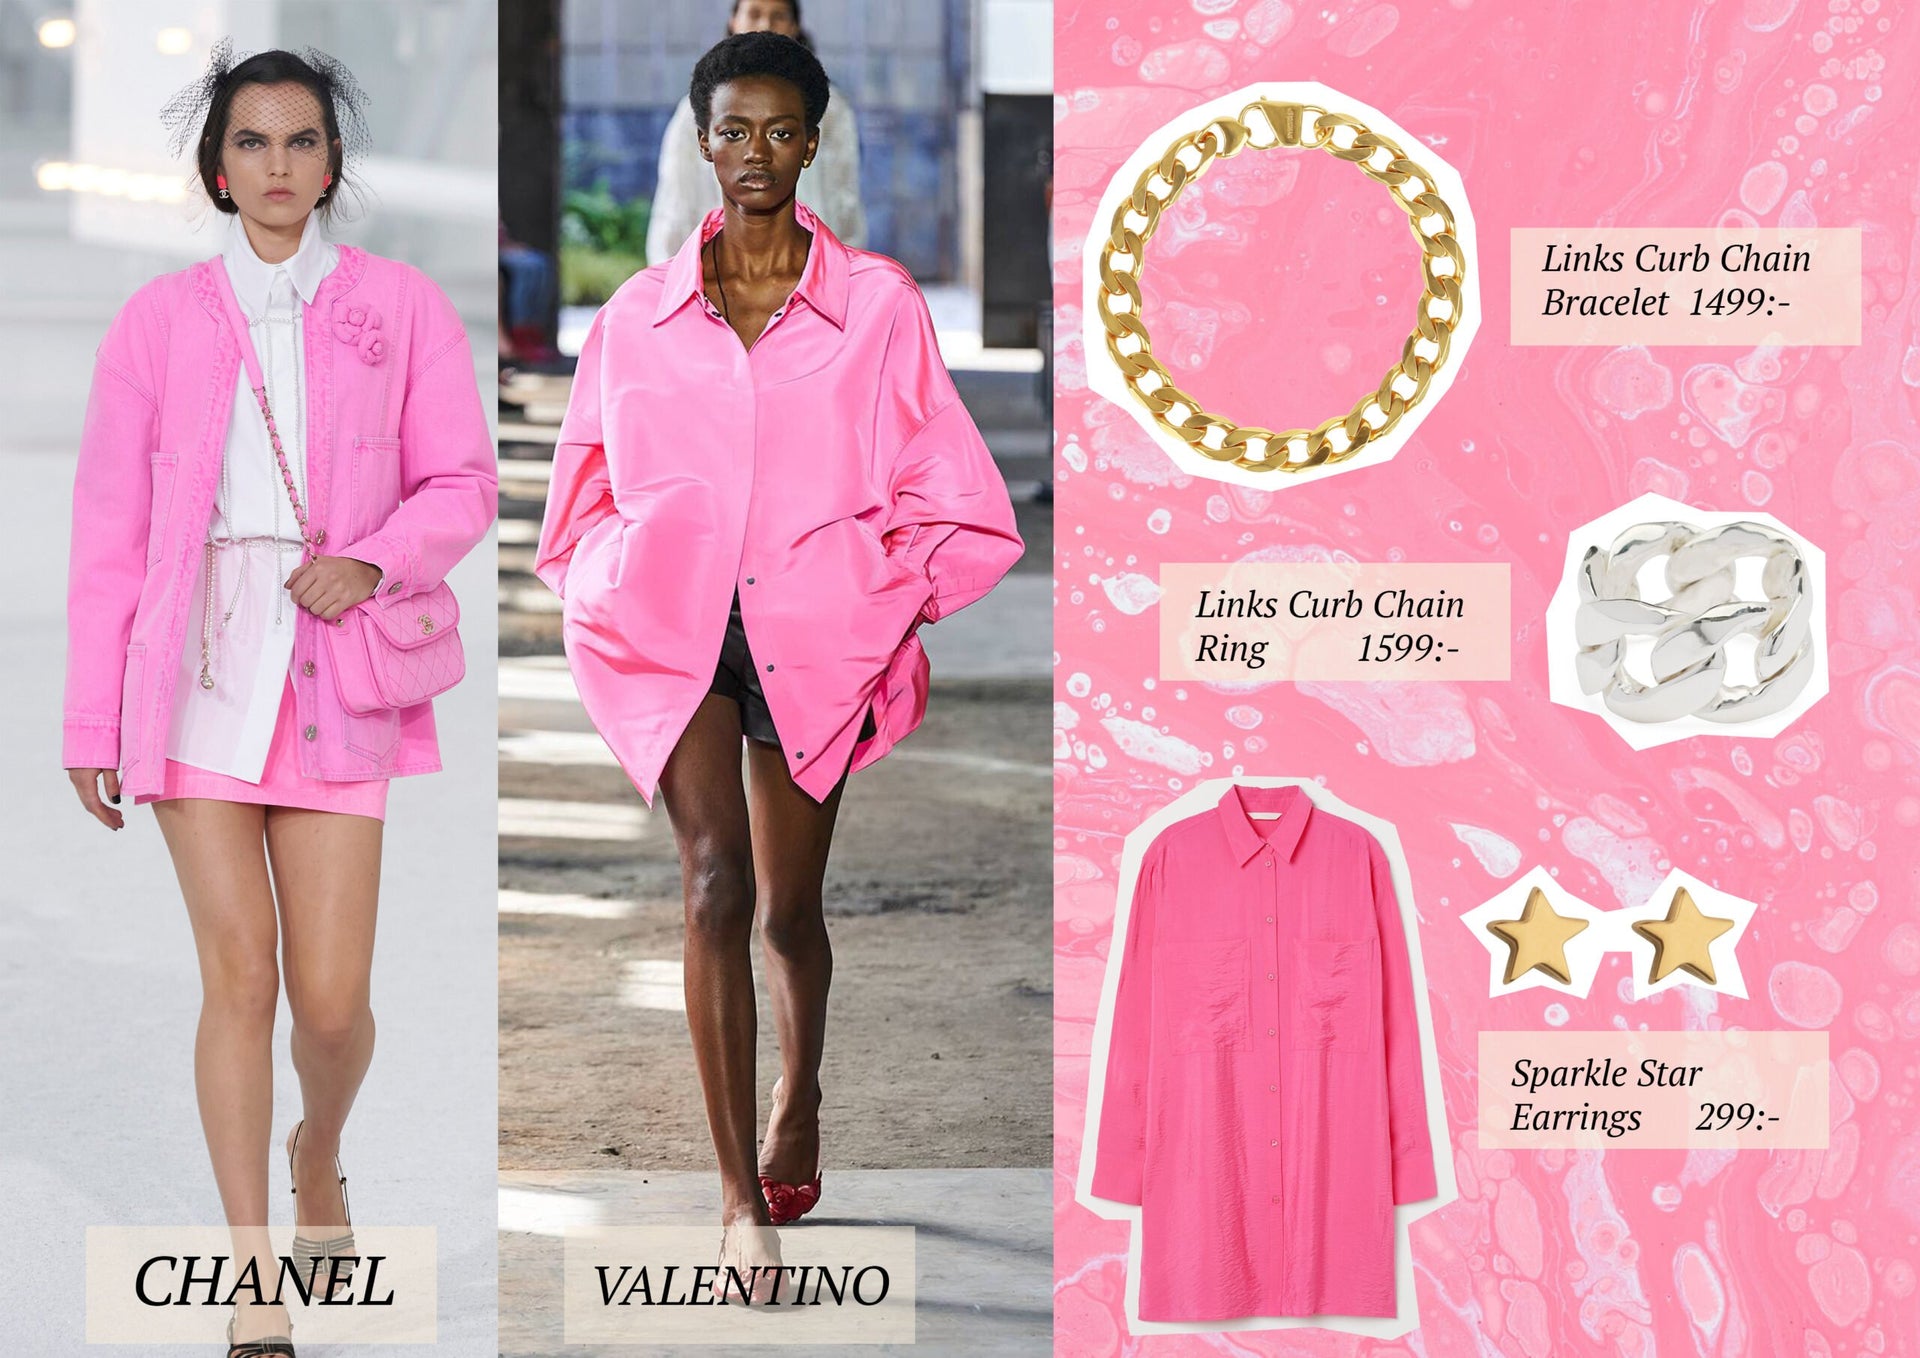 Kläder i rosa nyanser och smycken som du matchar tillsammans med kläderna.